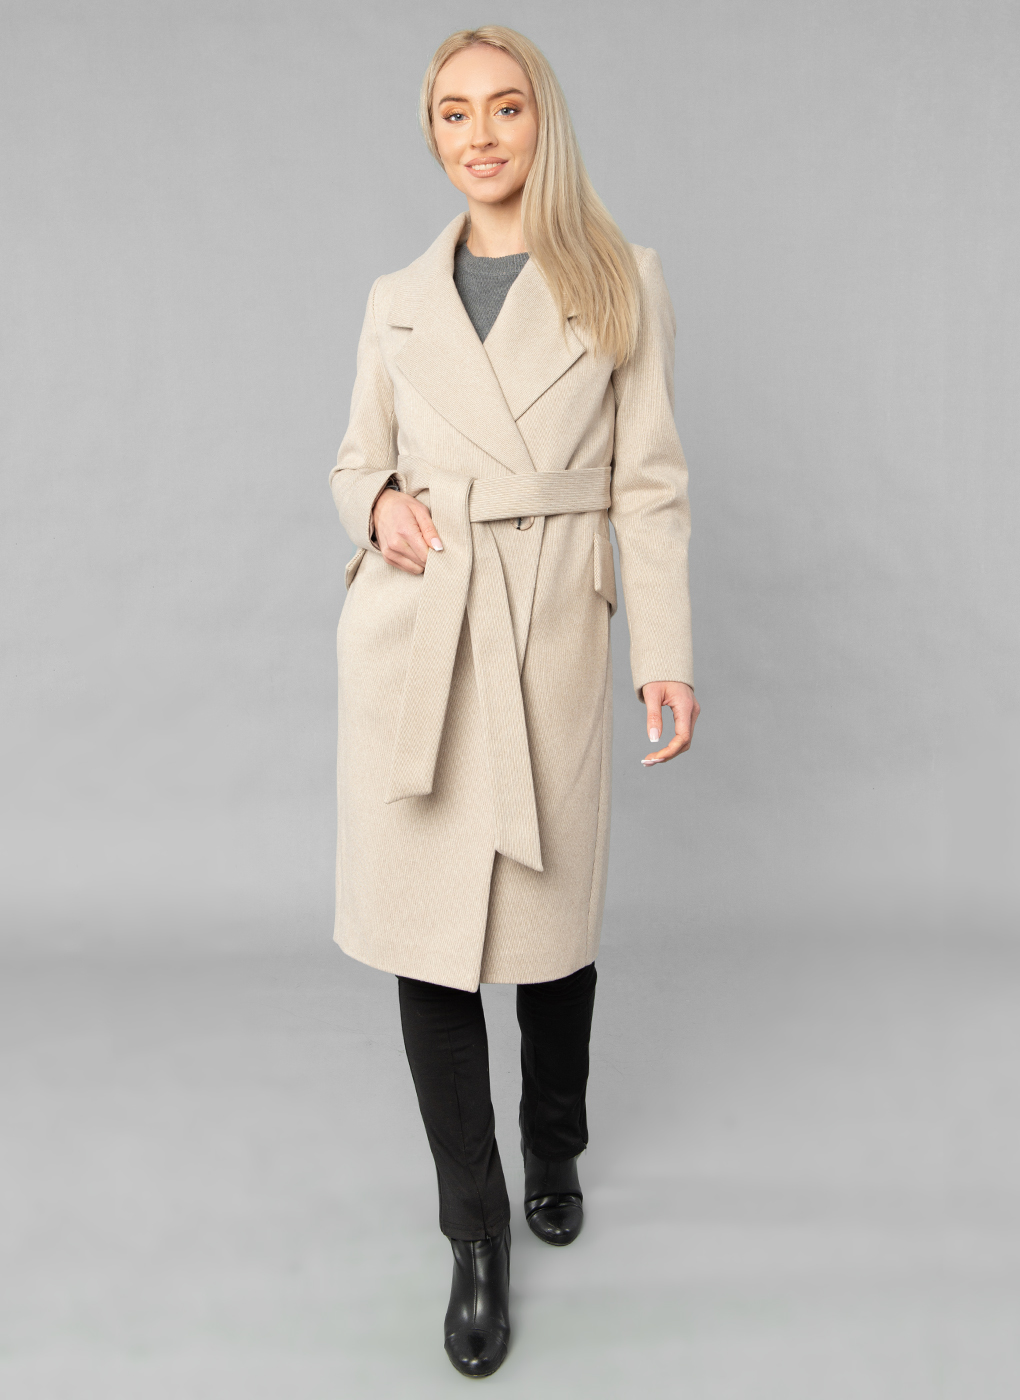 Пальто женское Sezalto 55023 бежевое 44 RU